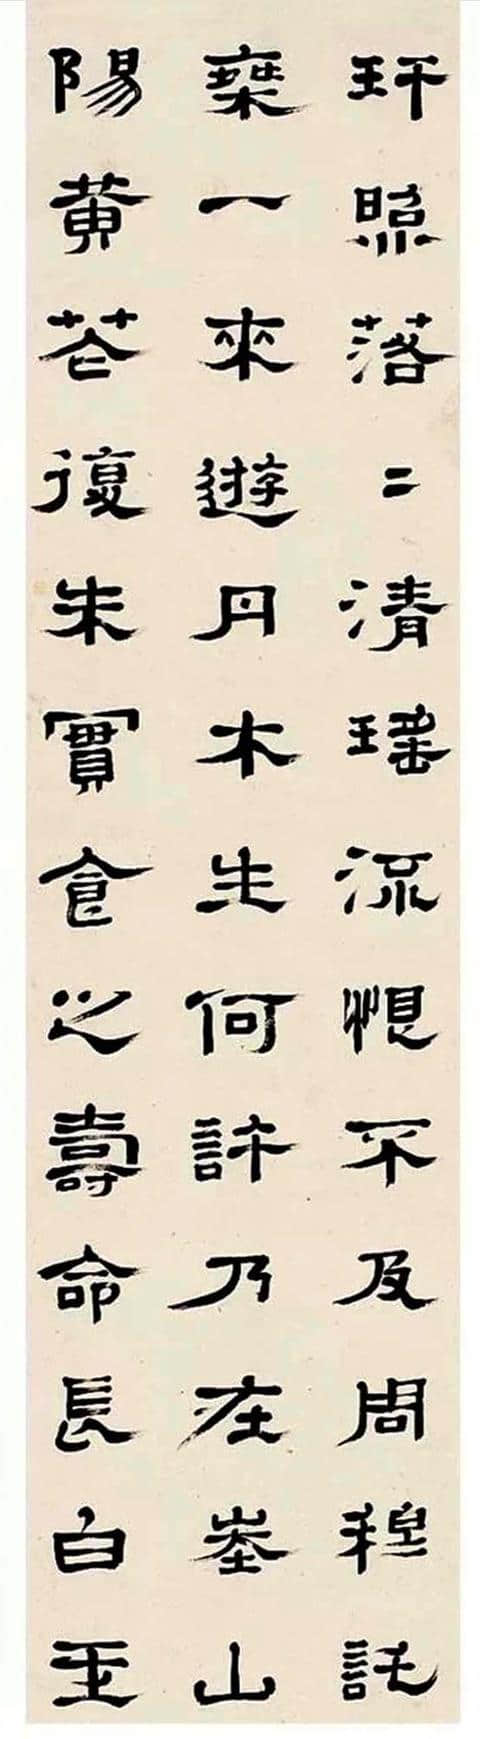 郑簠1669年作 隶书录《陶潜读山海经诗》十二屏